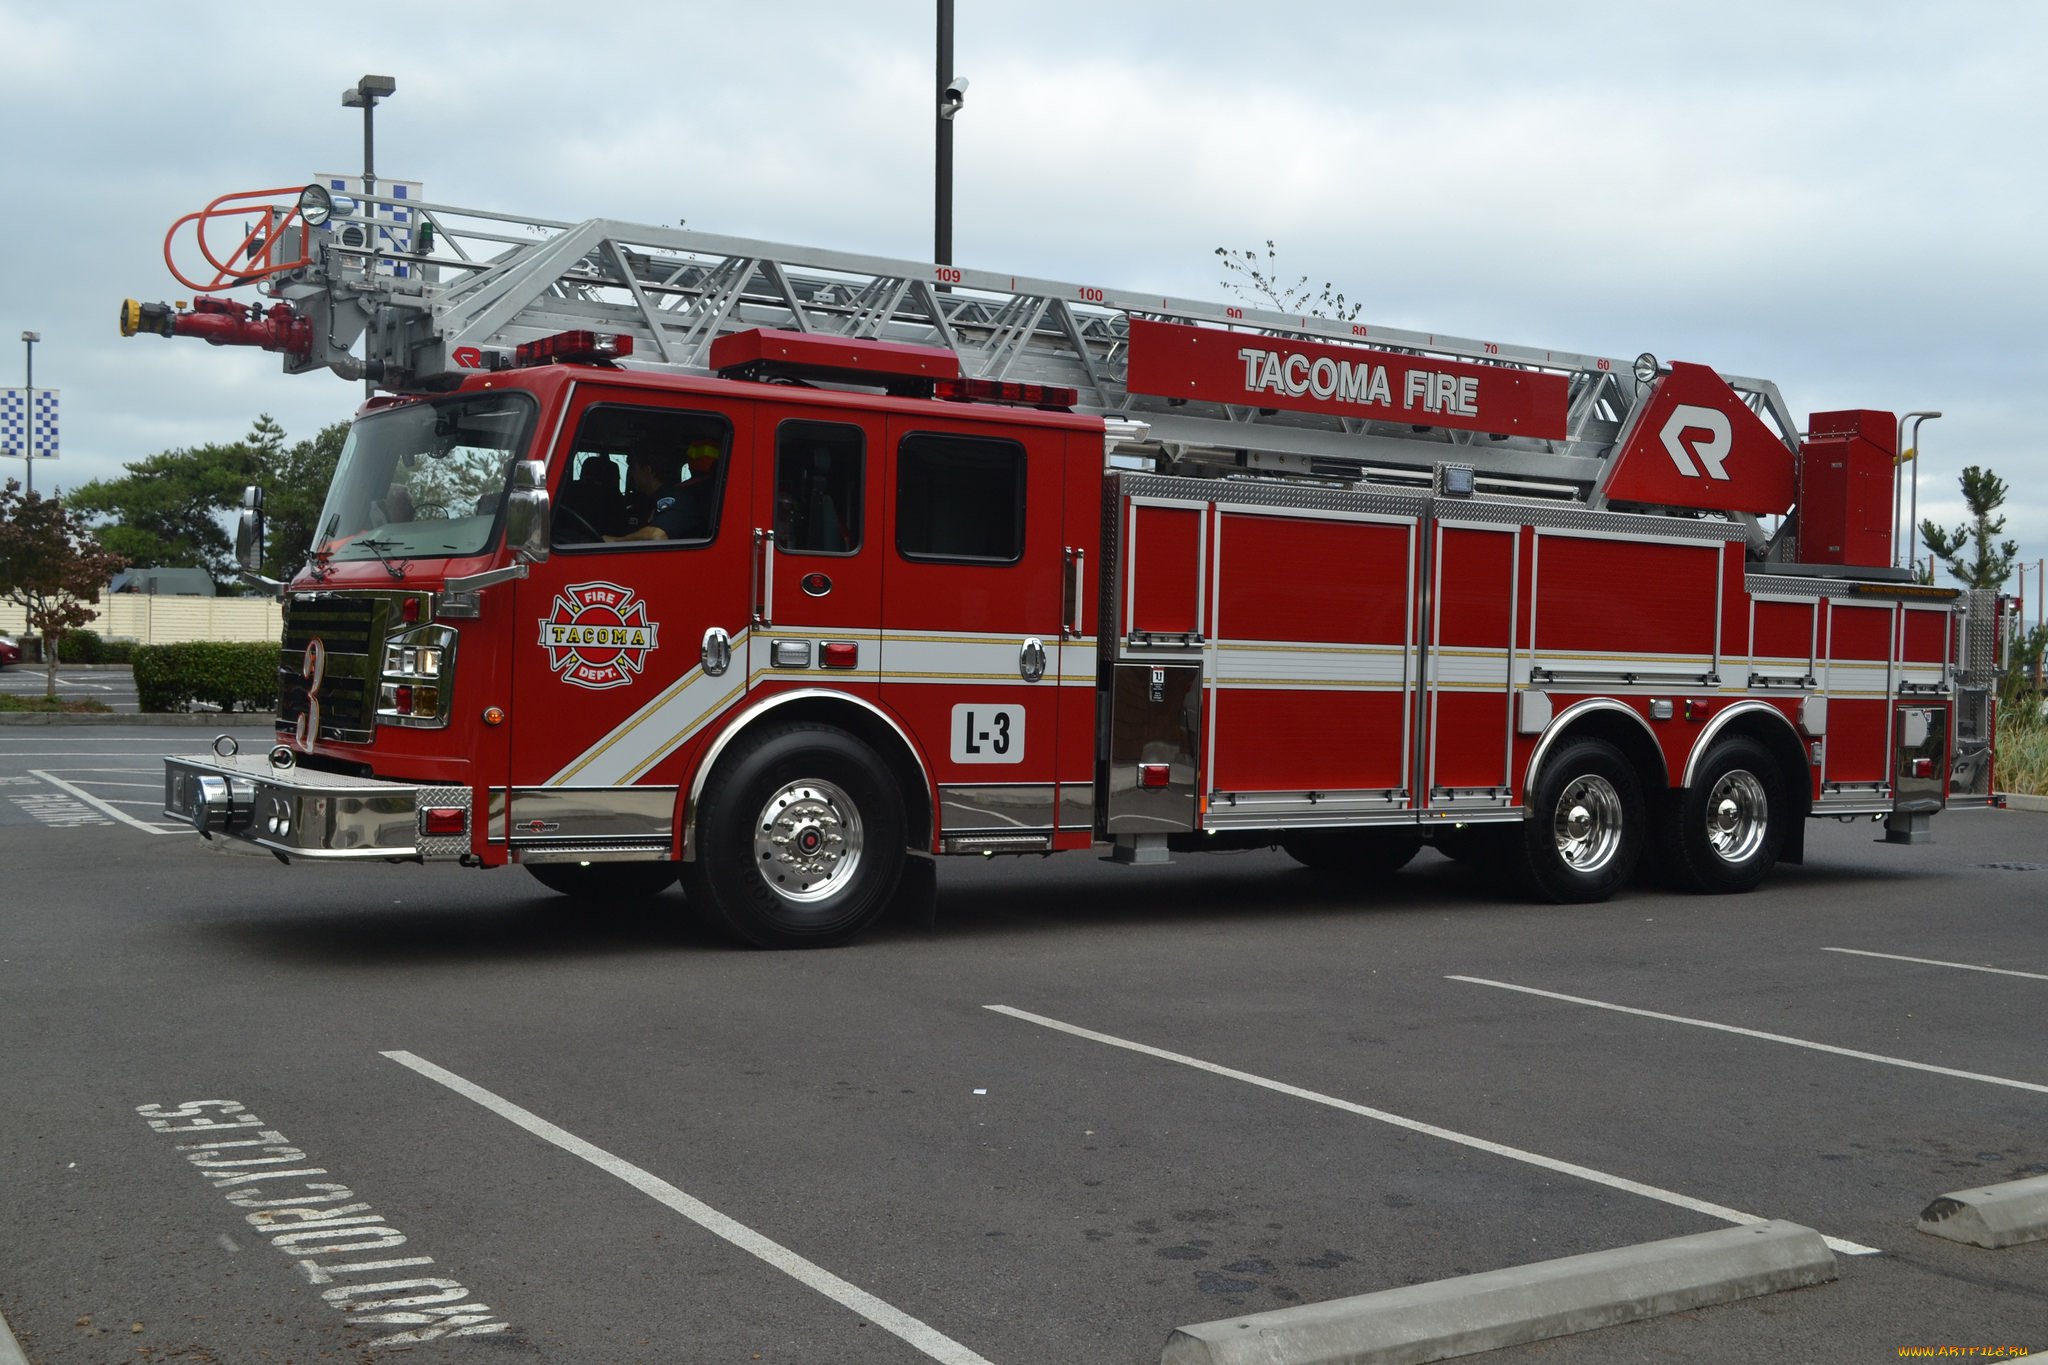 Пожарные автомобили делятся. Пожарная автолестница Simon hl-46. Мерседес 613 пожарка. Пожарная машина. Современная пожарная машина.